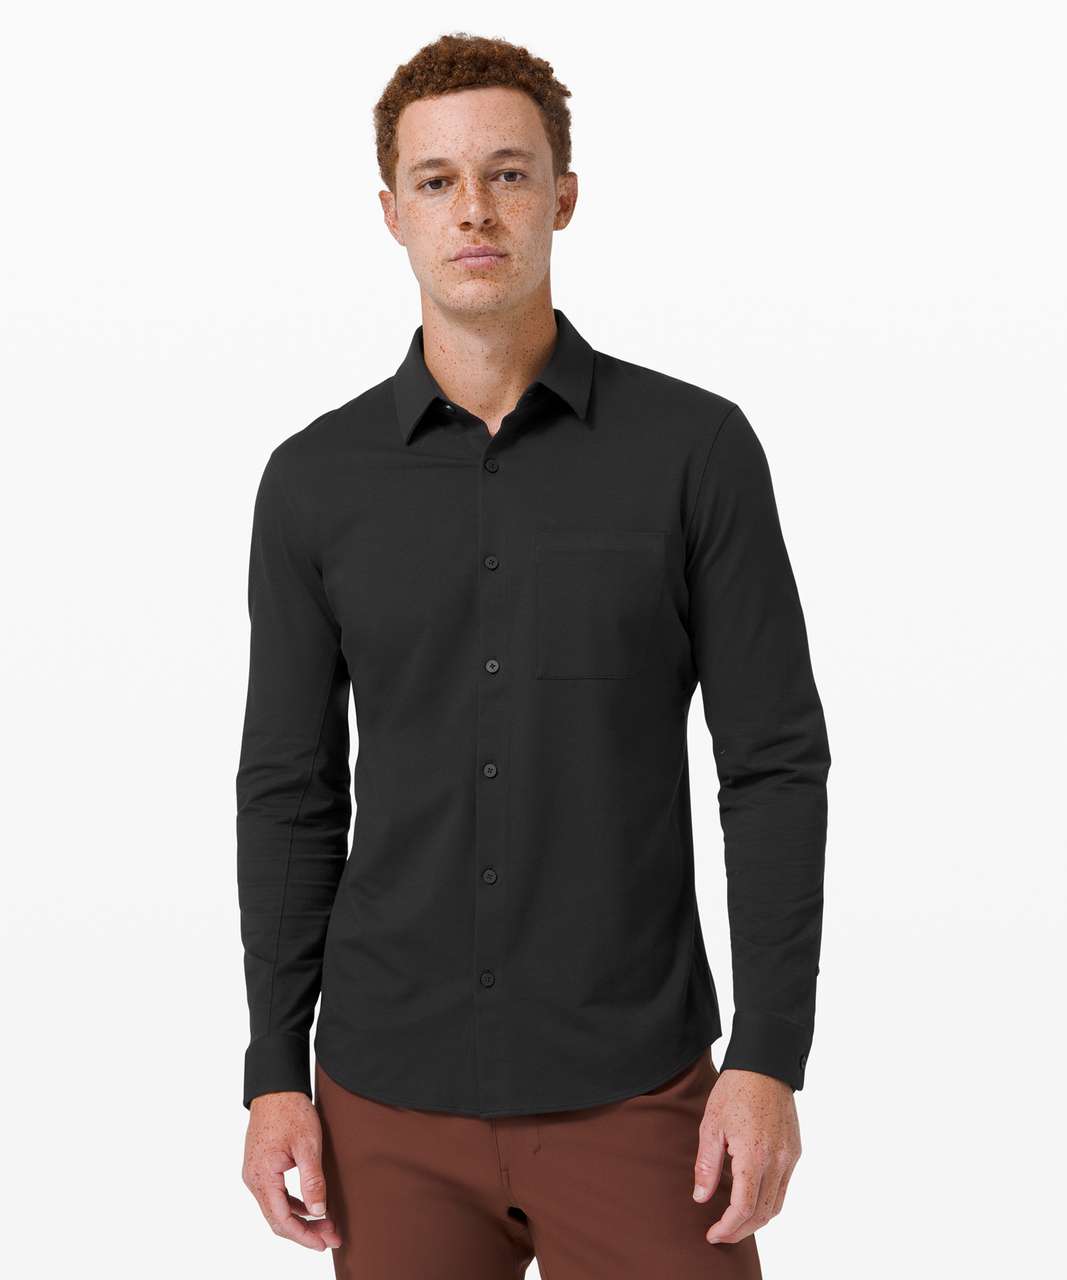 Lululemon Commission Long Sleeve Shirt - Black